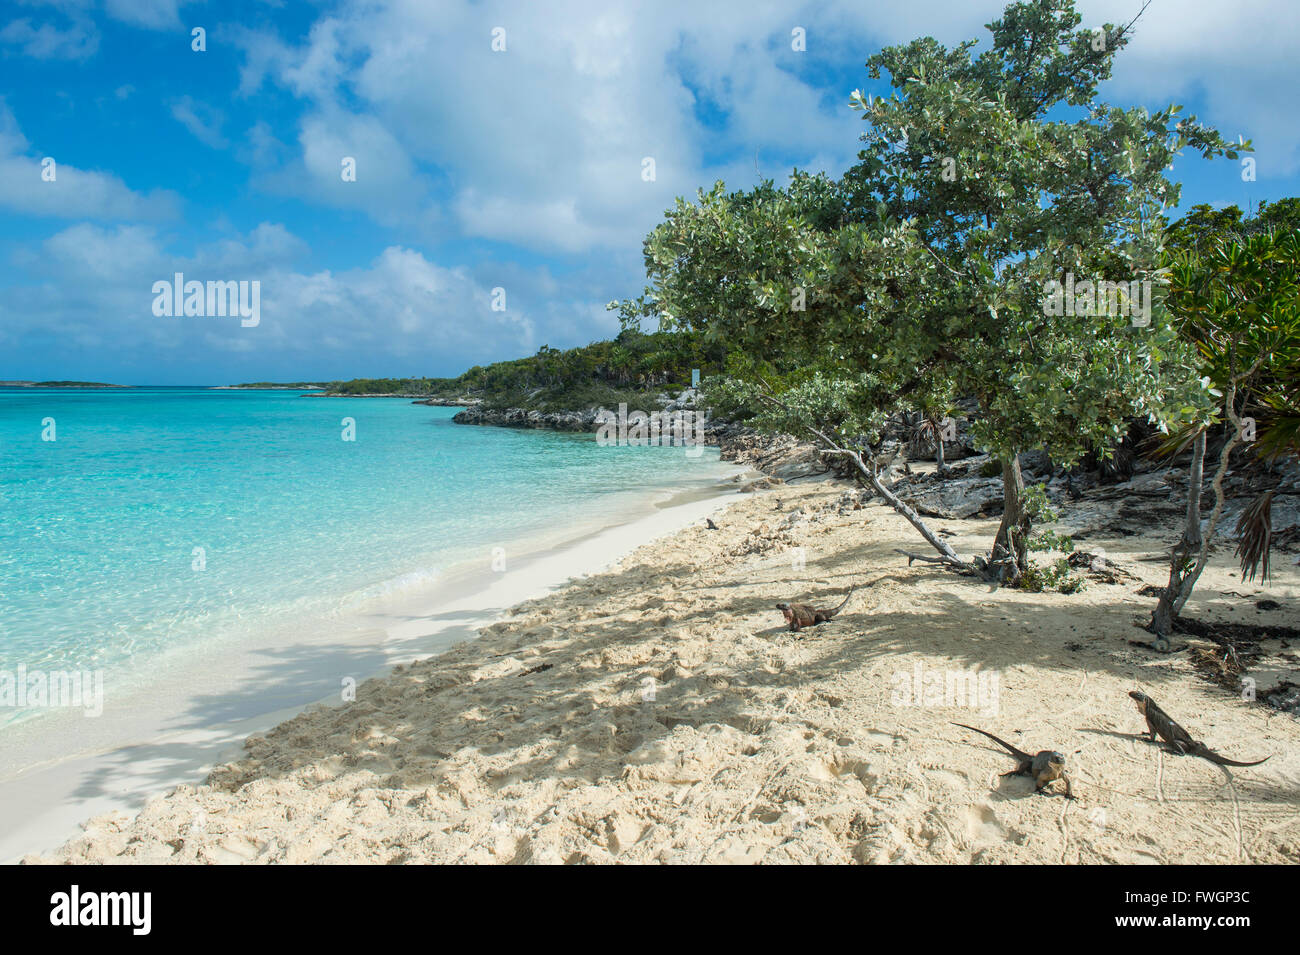 Iguanes marins sur une plage de sable blanc, Exuma, Bahamas, Antilles, Caraïbes, Amérique Centrale Banque D'Images